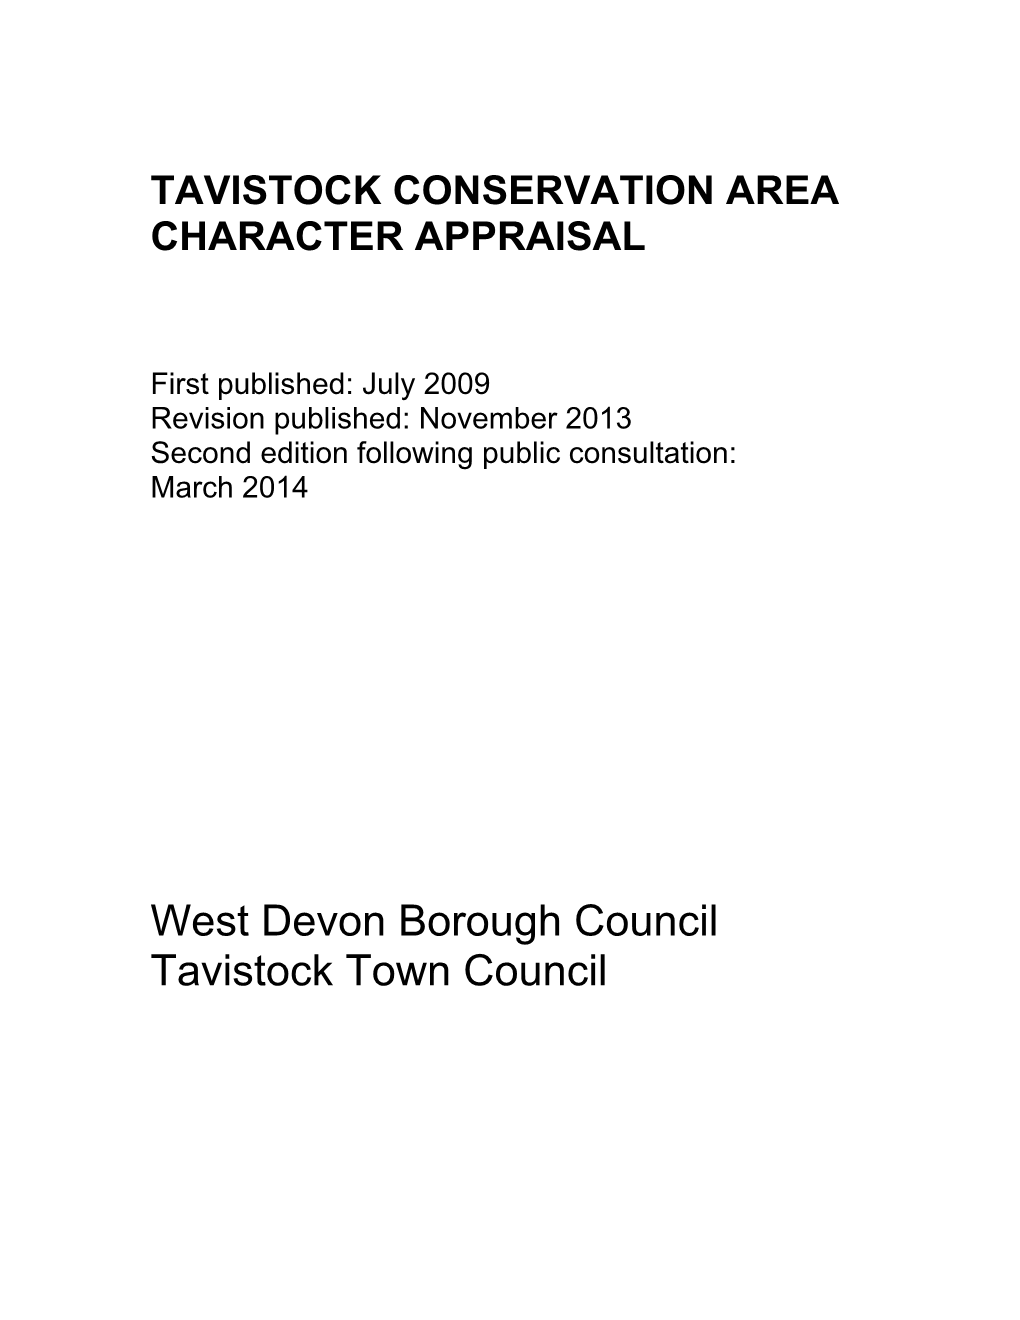 West Devon Borough Council Tavistock Town Council